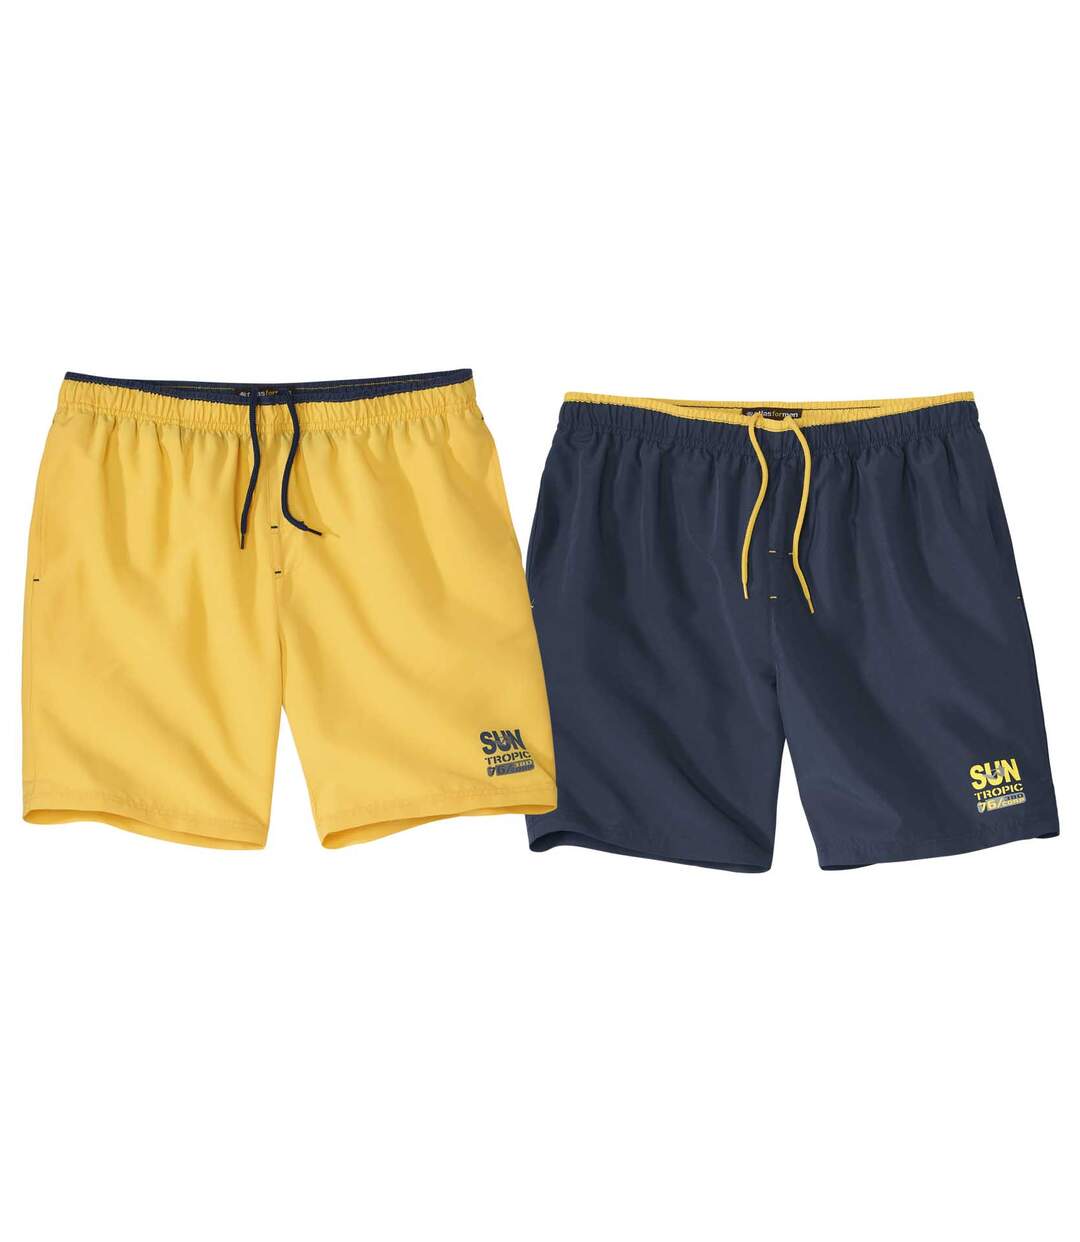 Pack of 2 Men's Summer Swim Shorts - Yellow Navy Atlas For Men